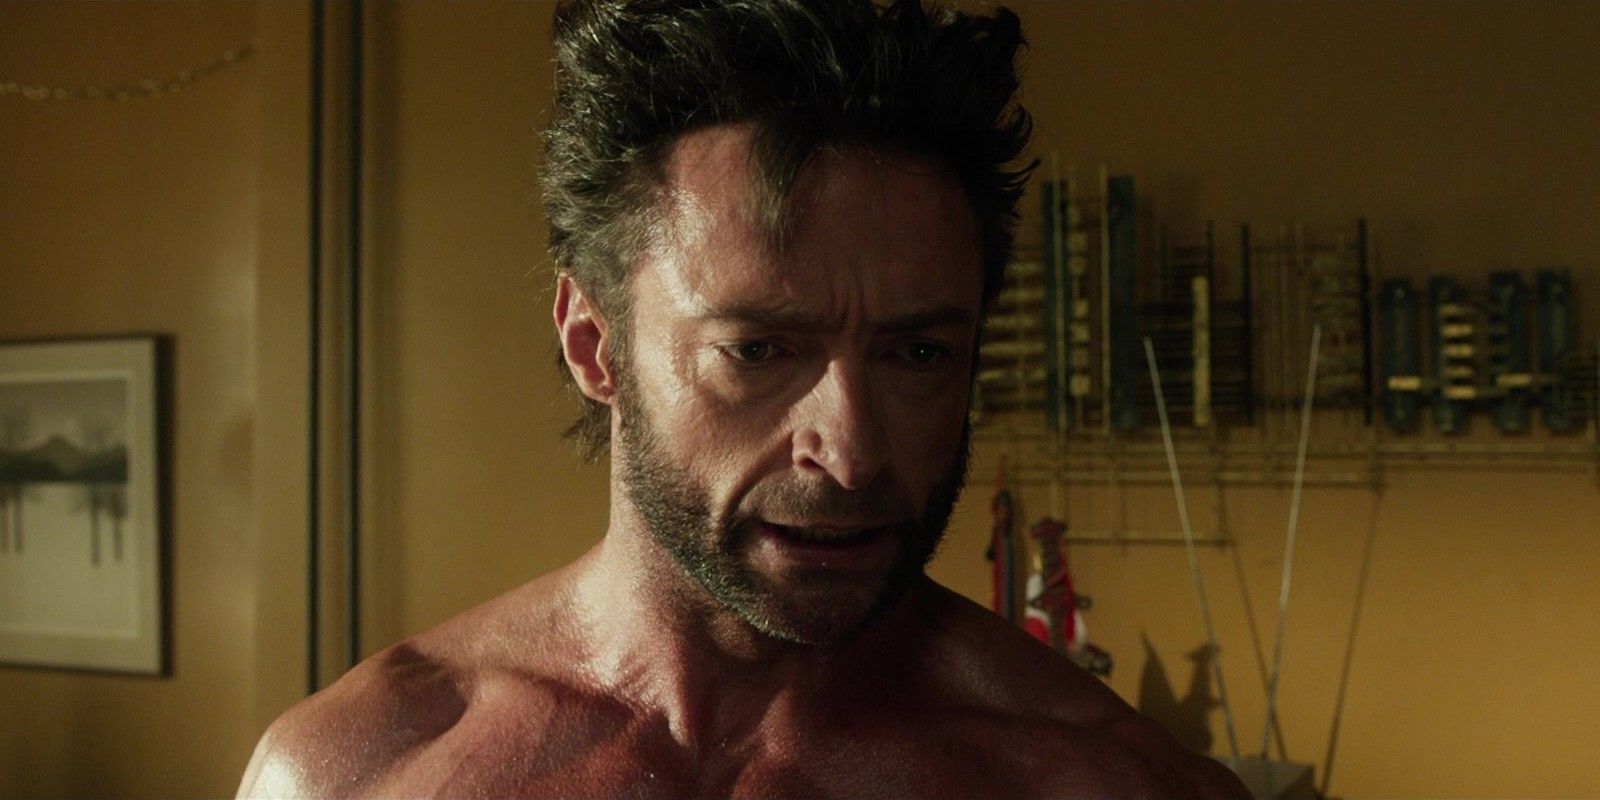 Cena de Rogue Cut de X-Men: Dias de um Futuro Esquecido com Wolverine em 1973